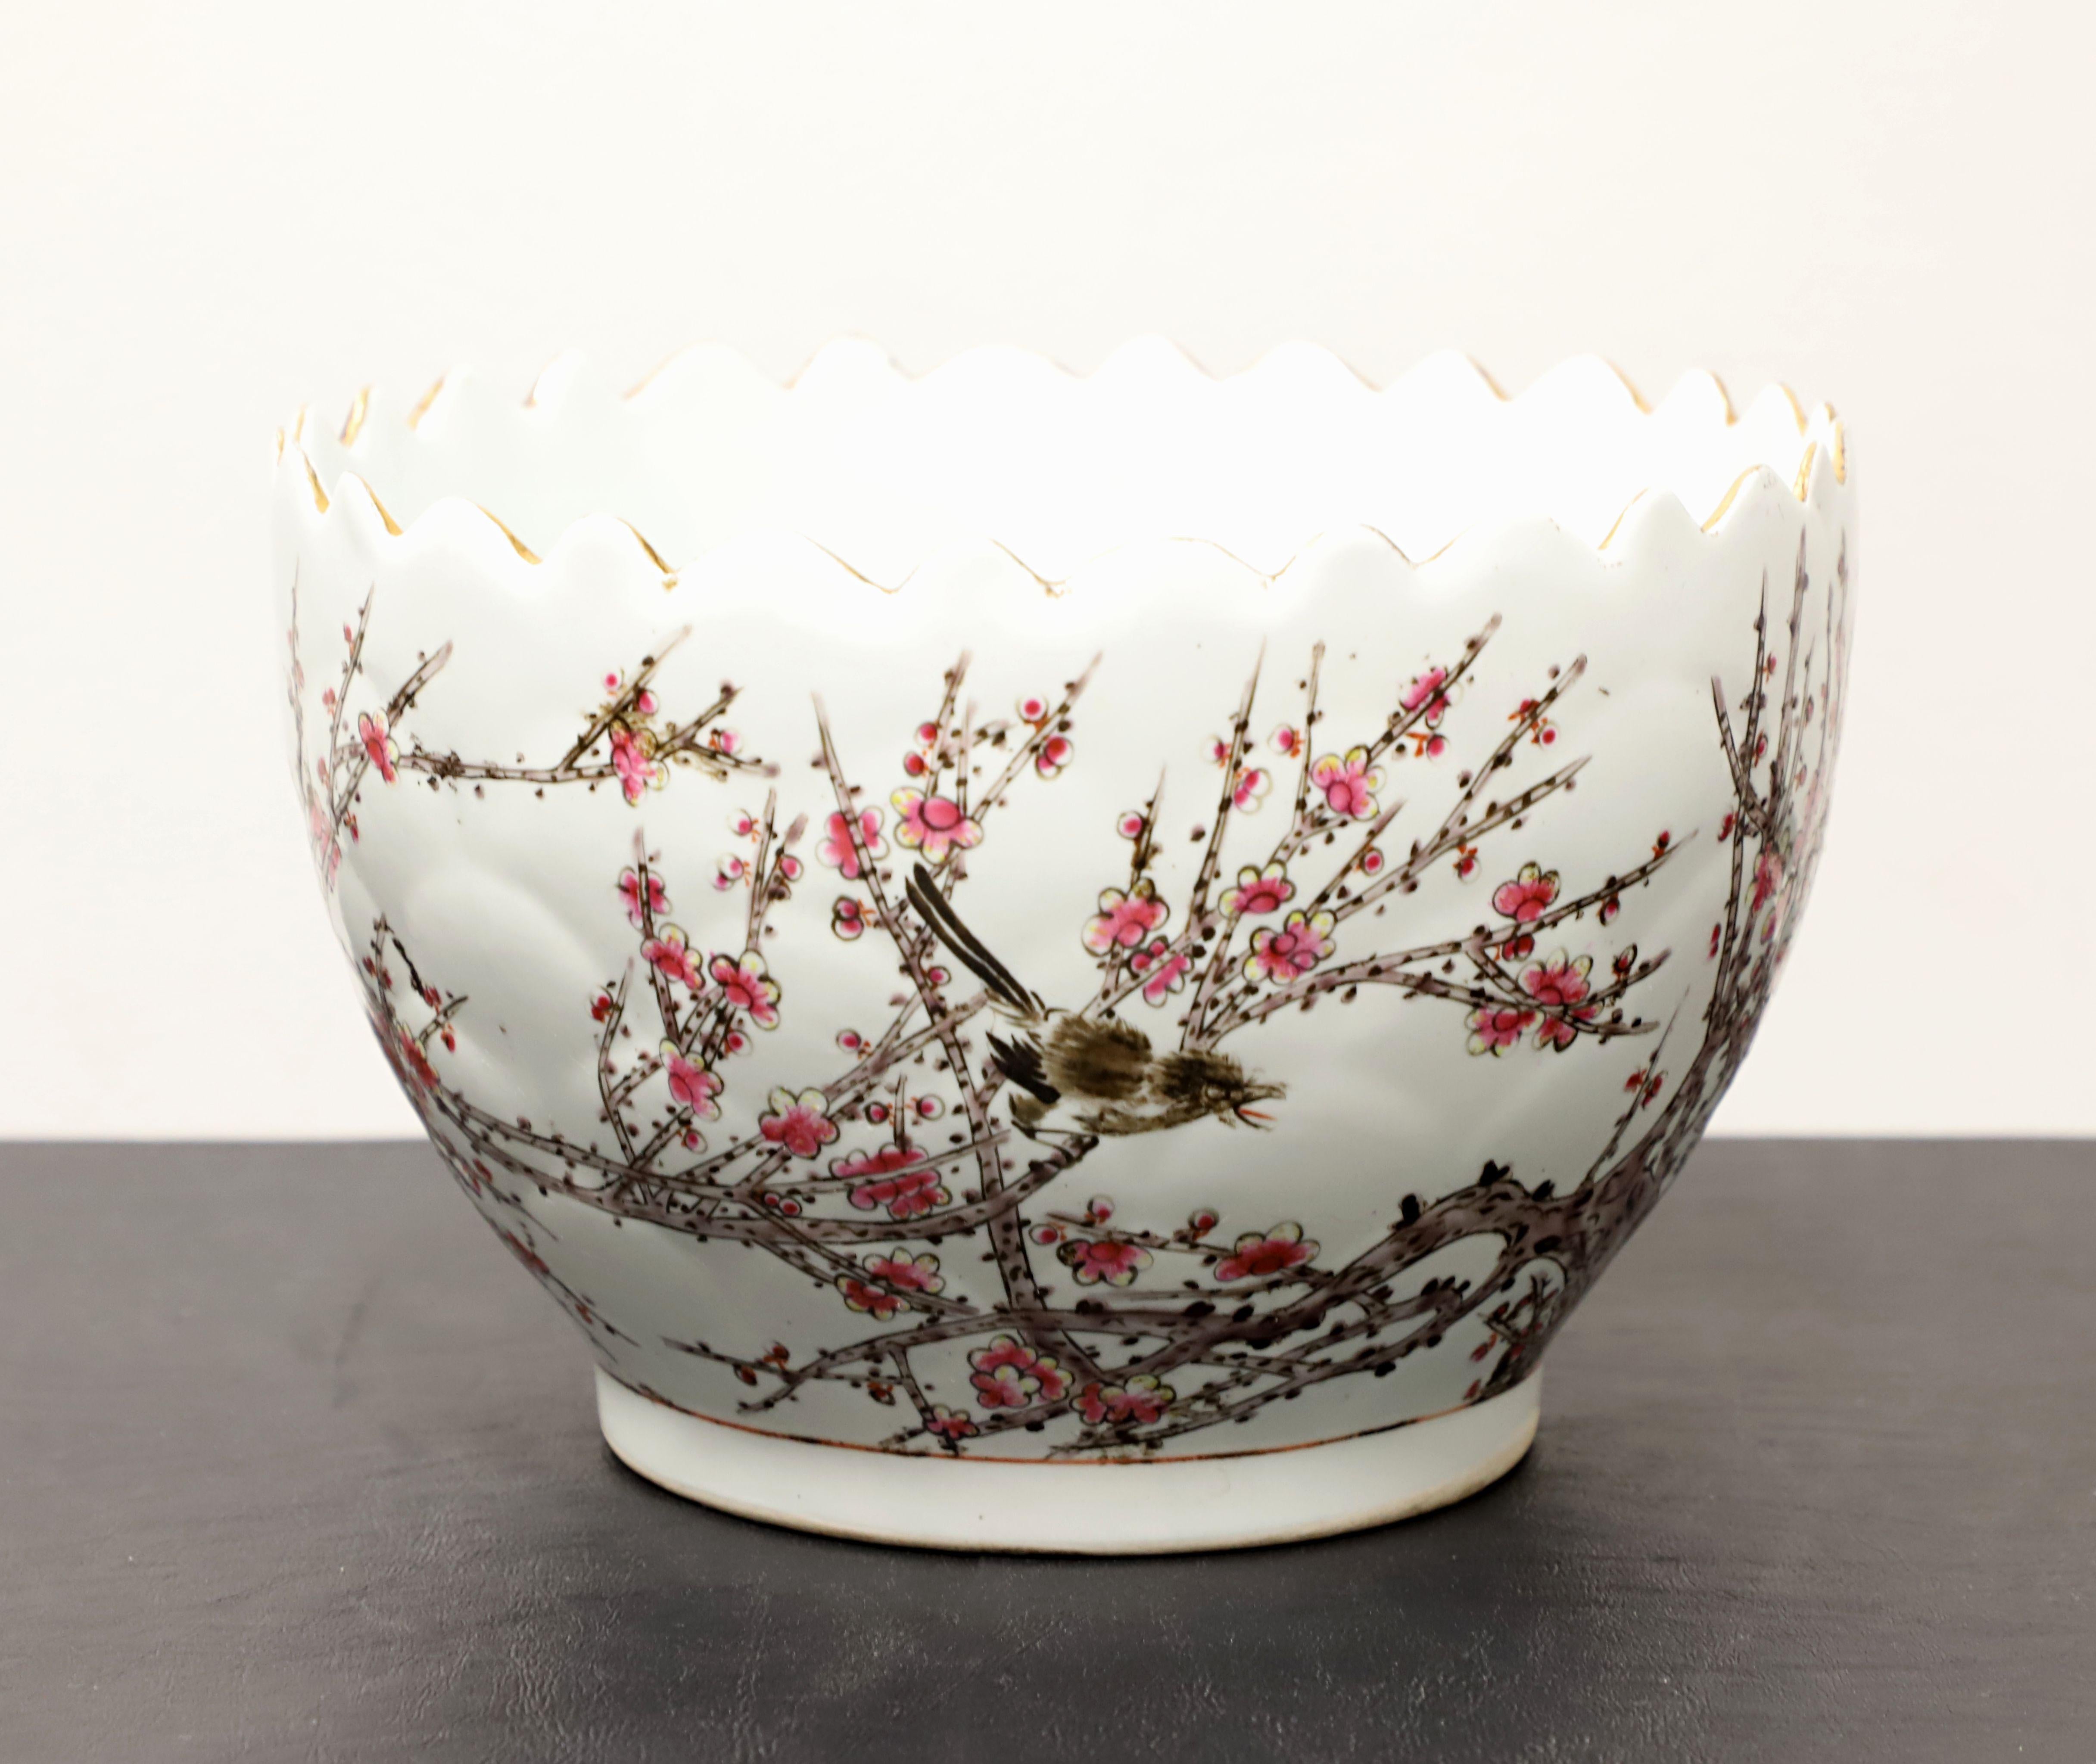 Bol décoratif en porcelaine asiatique de style chinois du milieu du 20e siècle, sans marque. Un magnifique bol rond en porcelaine avec un bord coupé en dents de scie, une base de couleur blanche, peint à la main avec des fleurs de cerisier et des